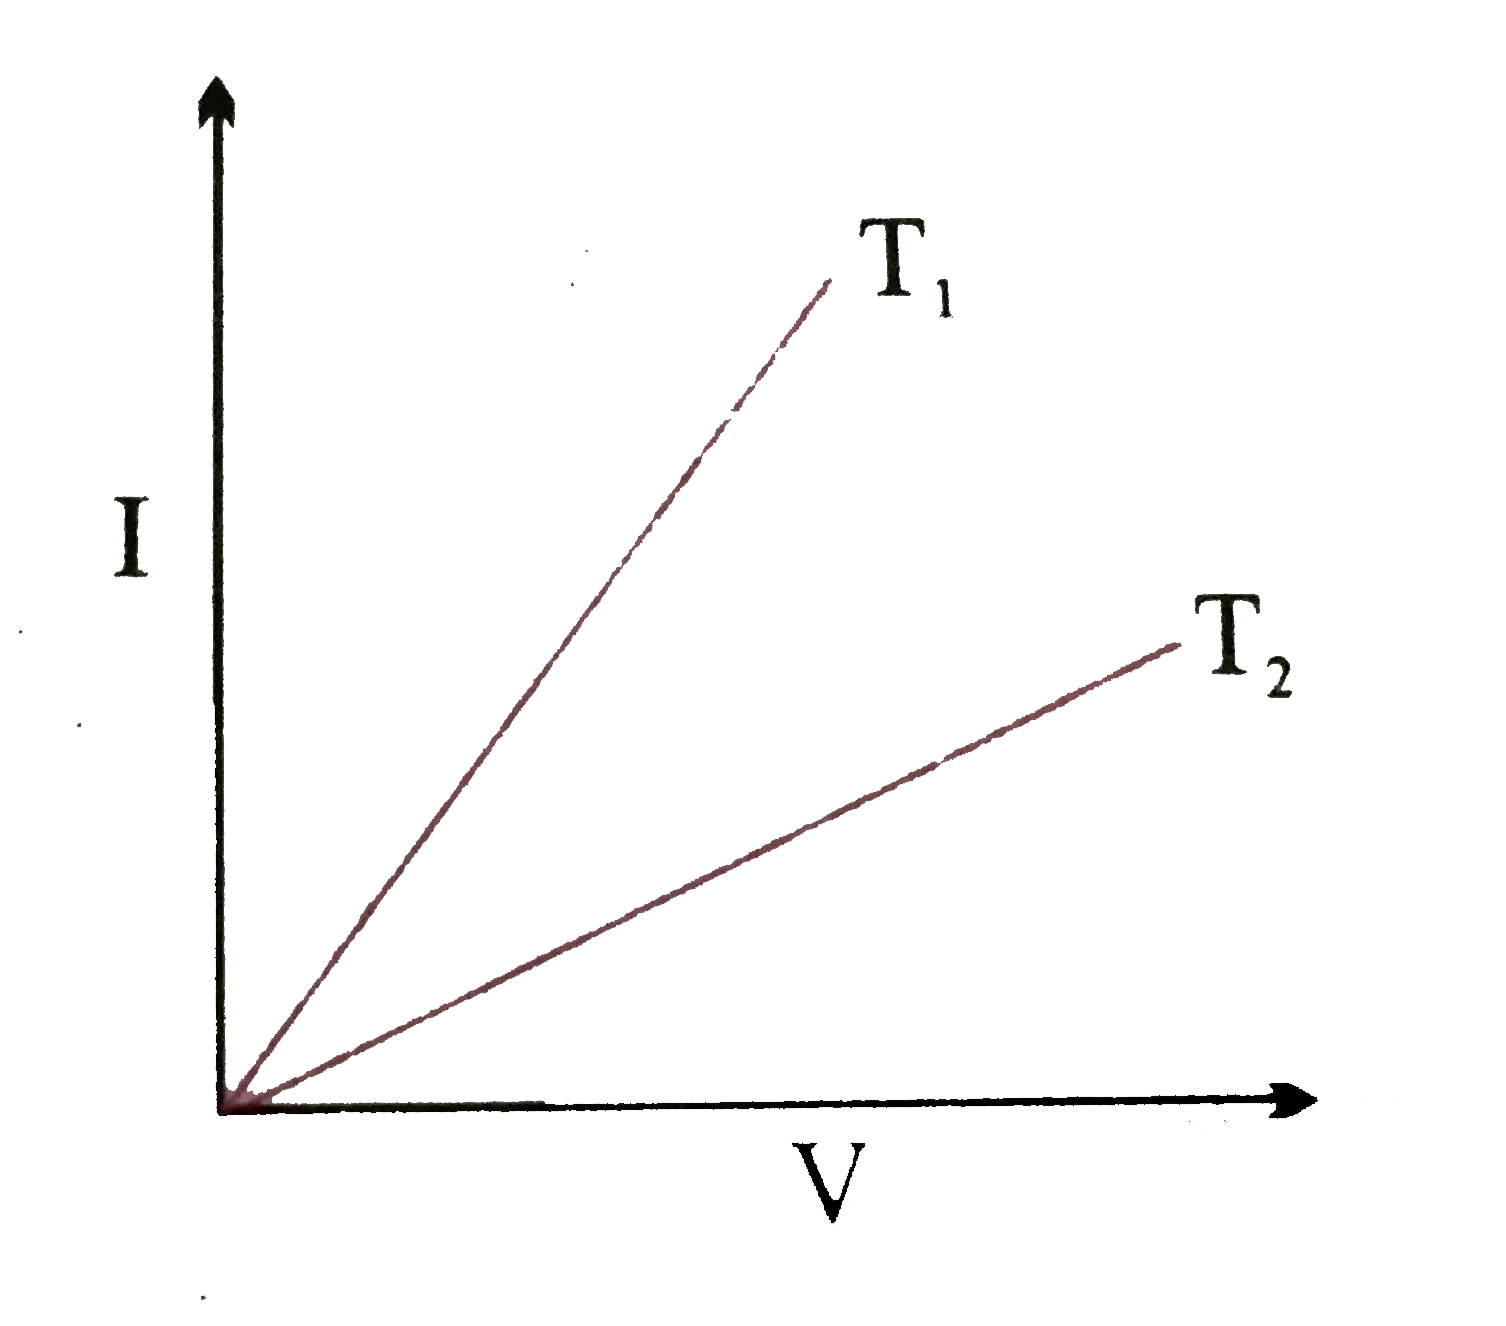 चित्र में विभवांतर  V और धारा  I  के बीच किसी चालक  के दो ताप  T(1)और T(2) पर ग्राफ  दिखाए गये  गये है । T(1)और T(2) में सम्बन्ध होगा -